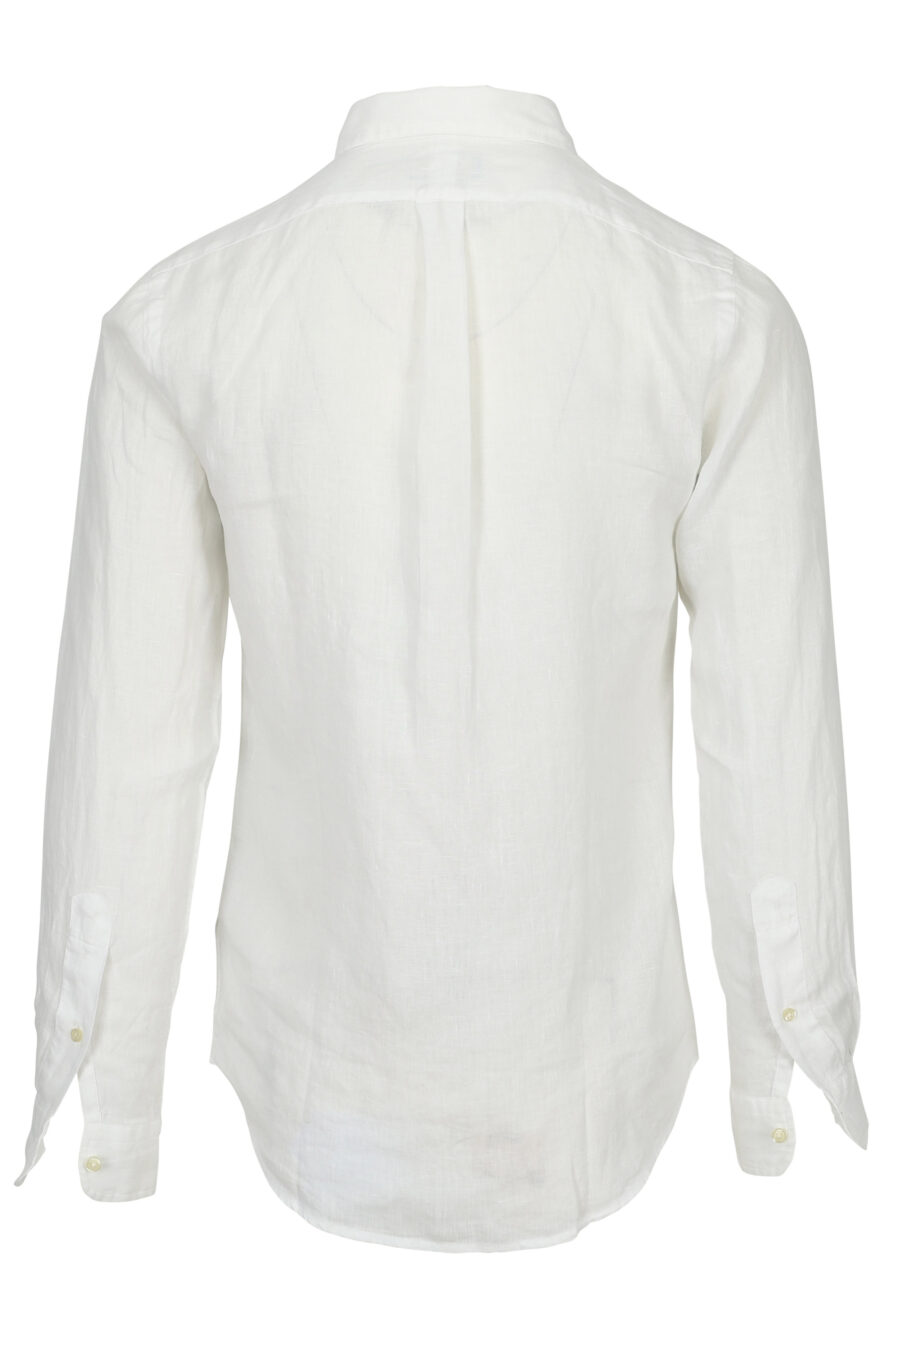 Camisa blanca con minilogo "polo" - 3616419391393 1